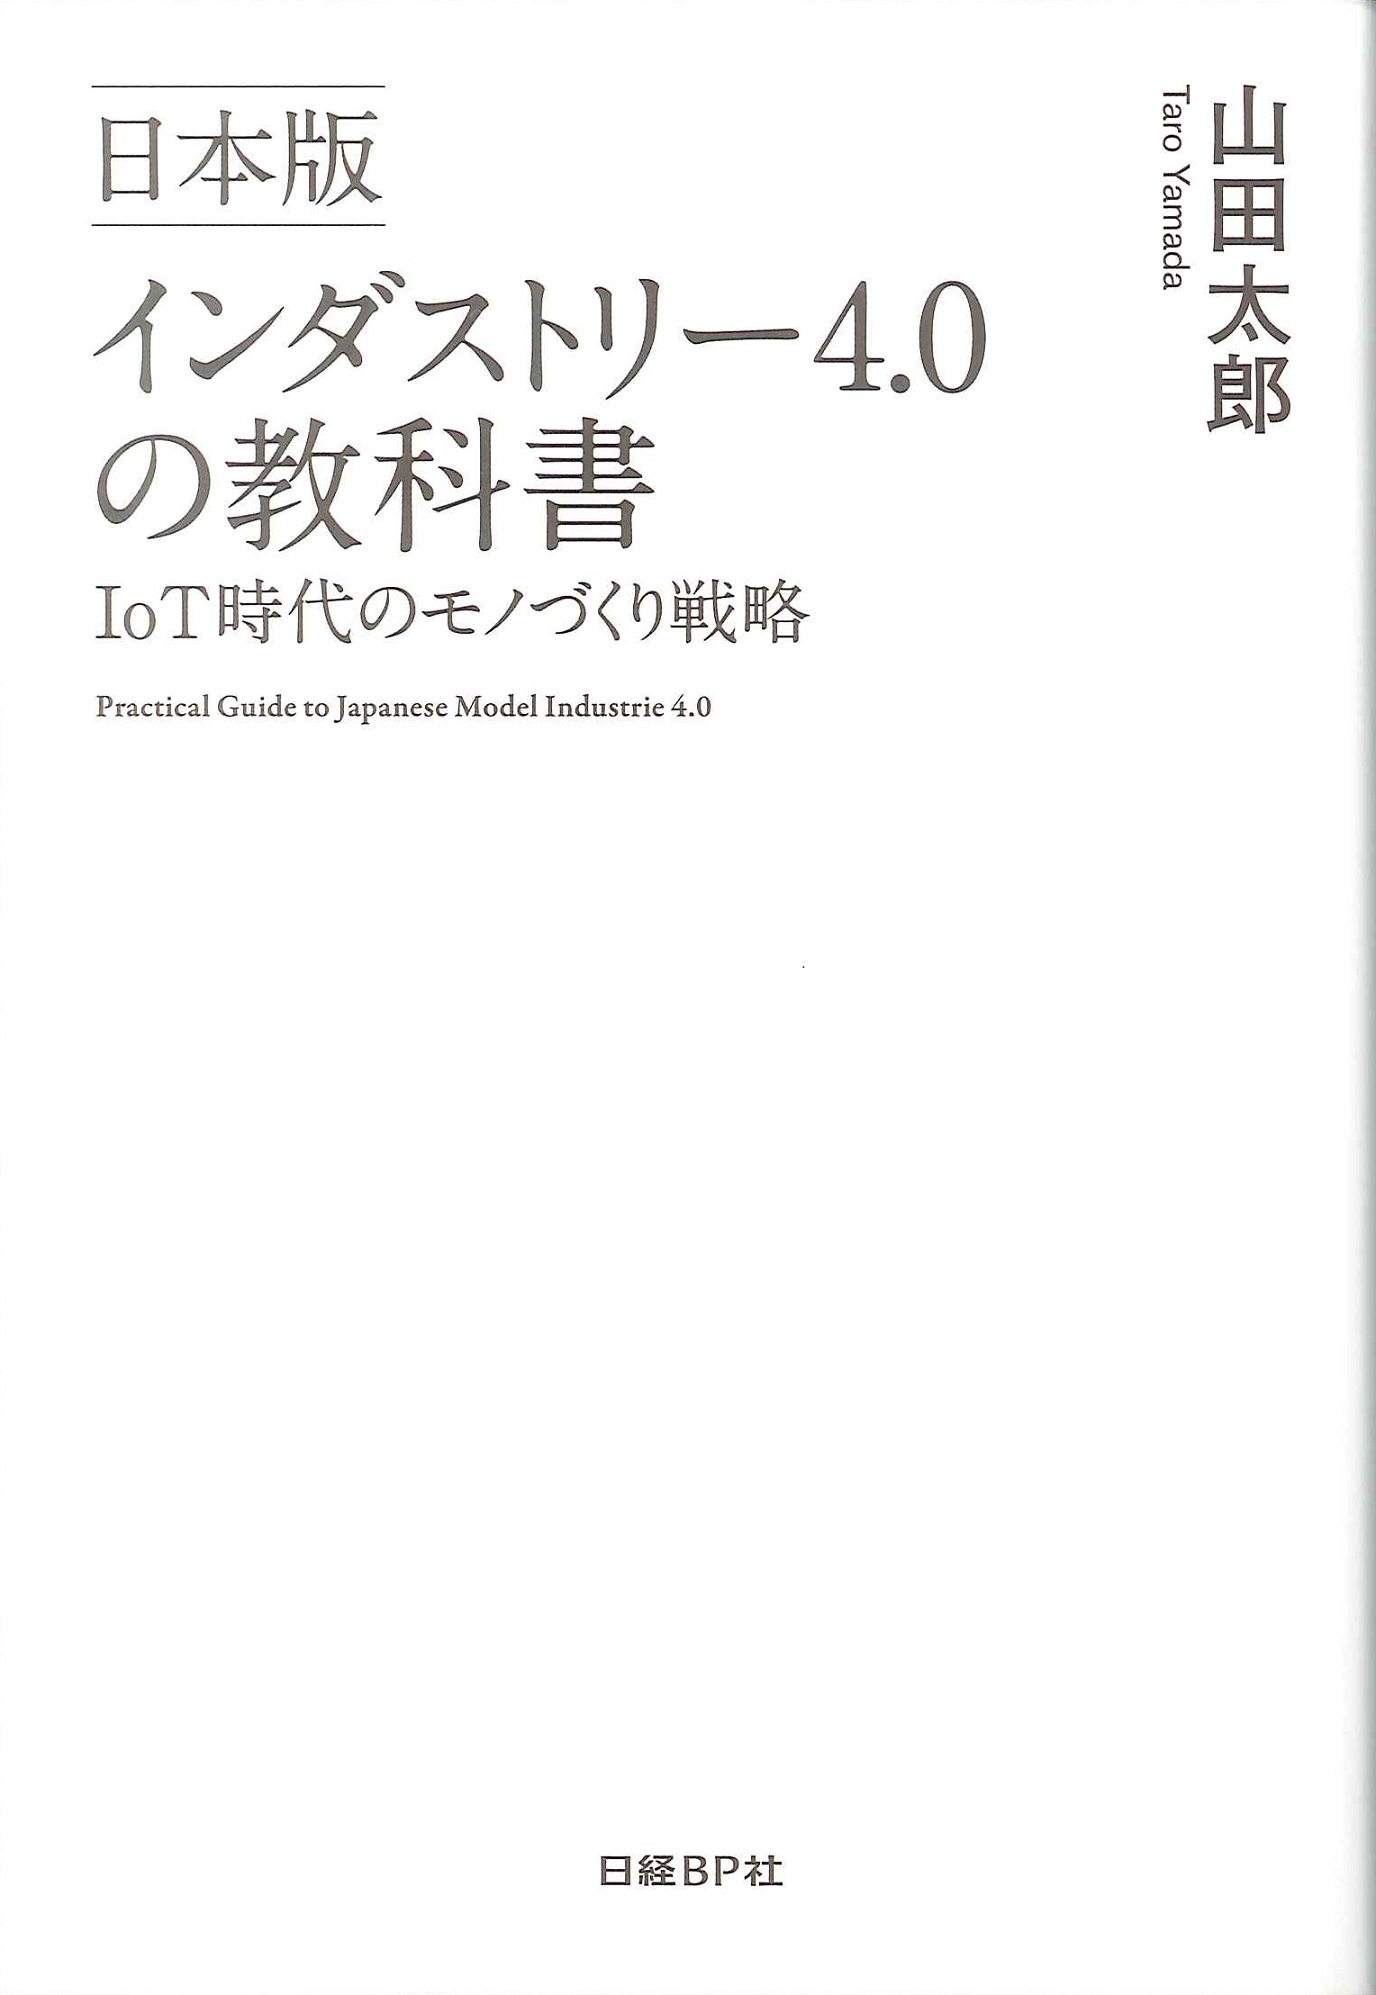 インダストリー4.0の教科書:IoT時代のモノづくり戦略=Practical guide to Japanese model industrie 4.0